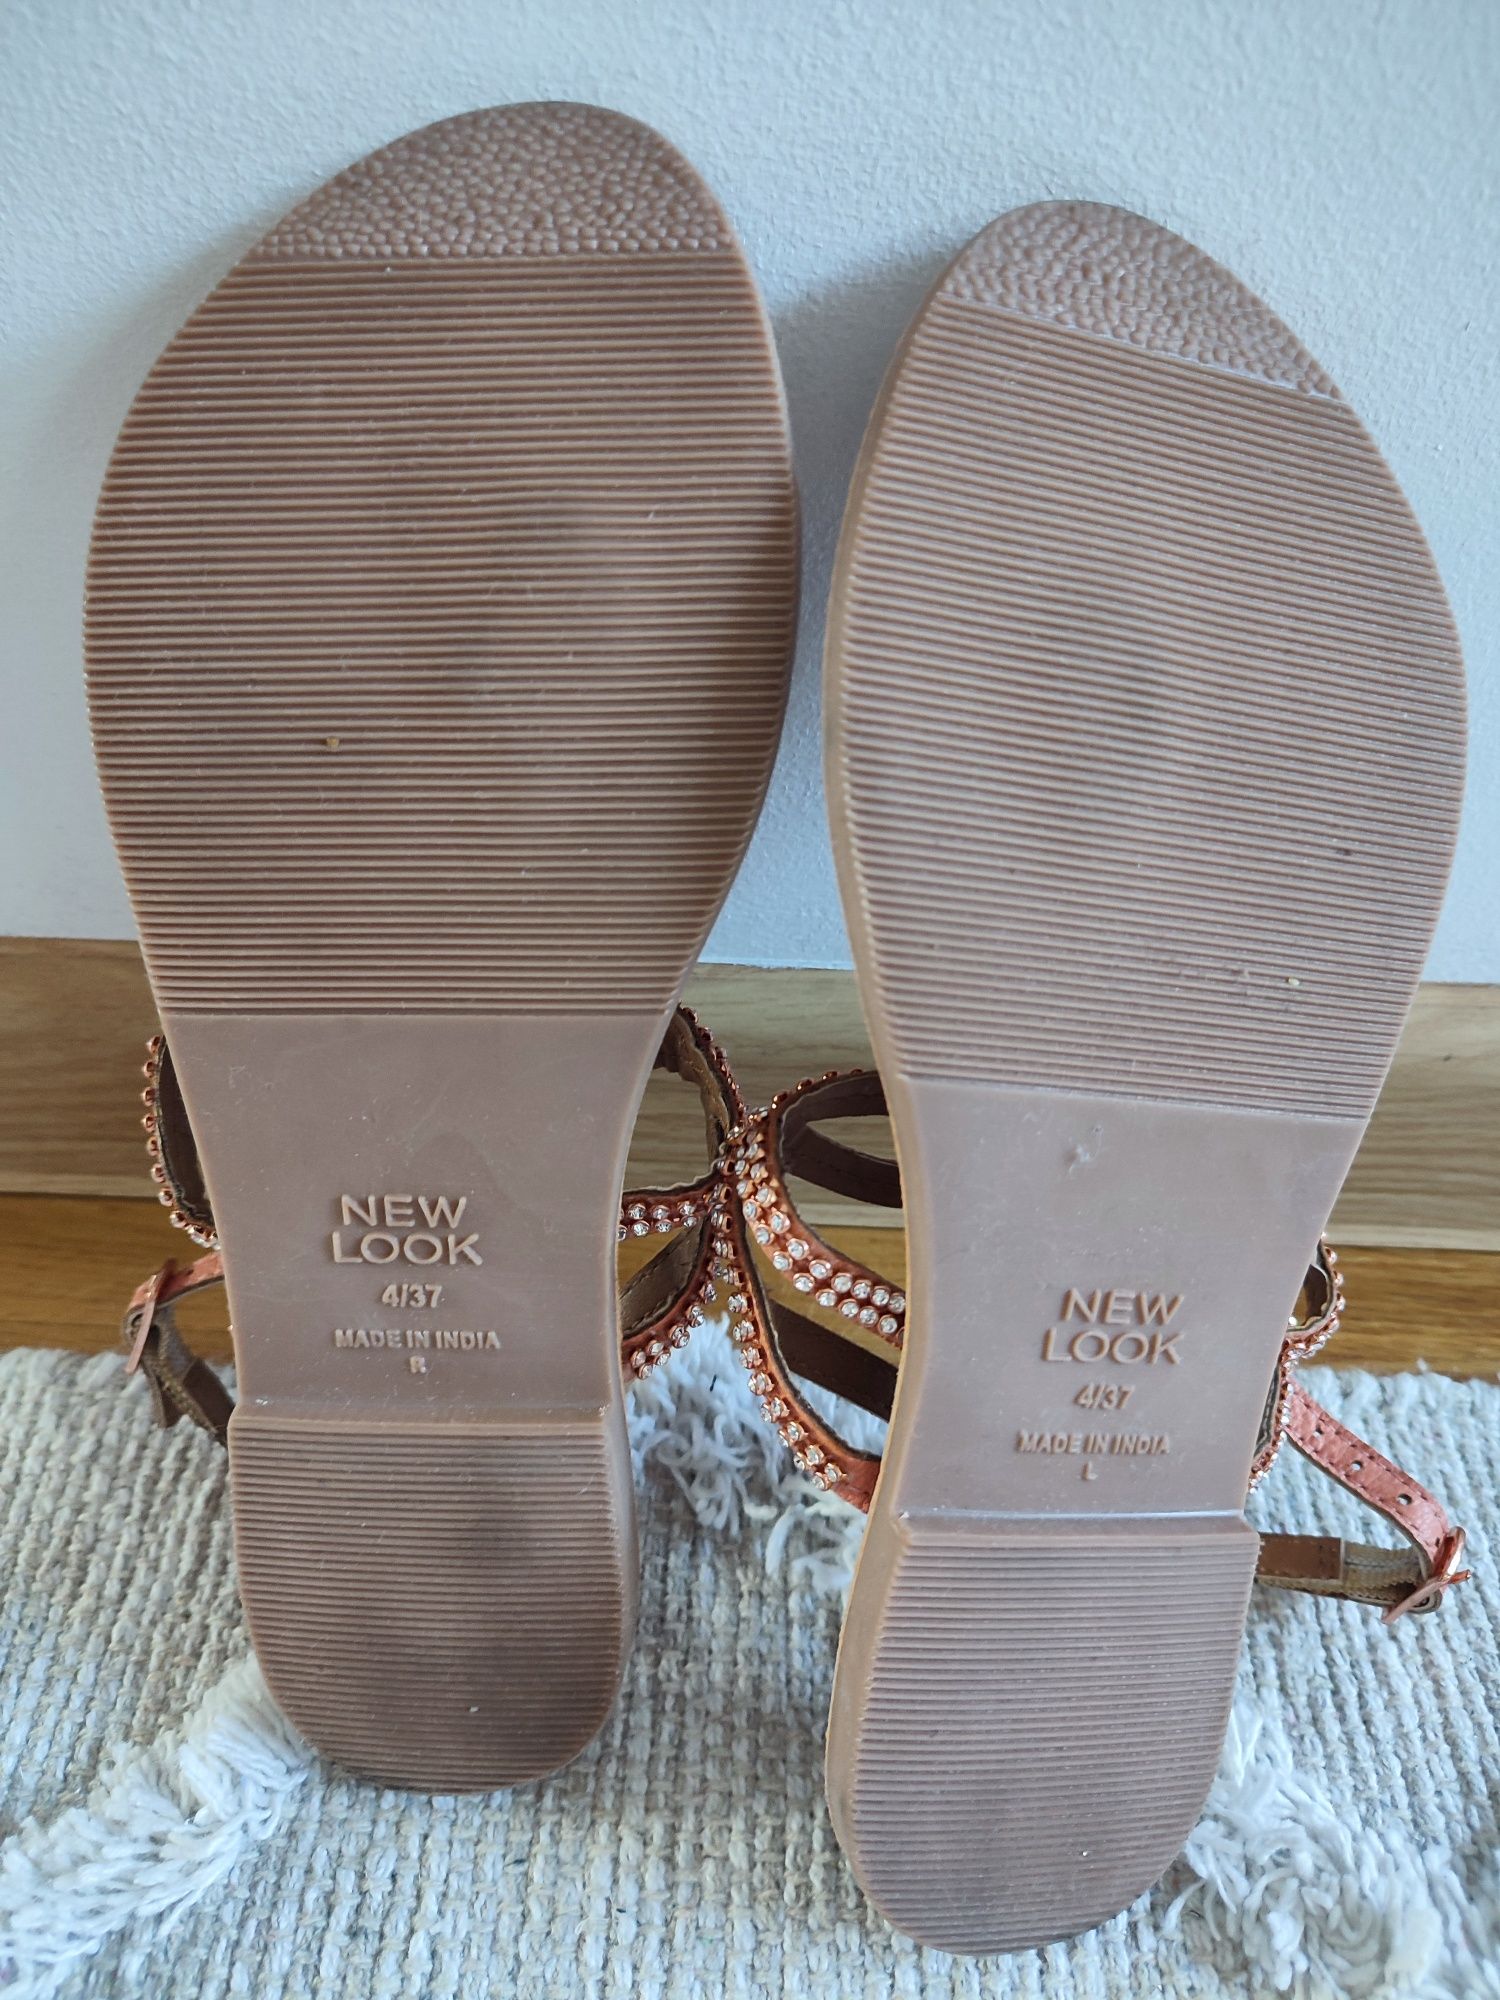 Sandały japonki New Look r 36/37 cyrkonie